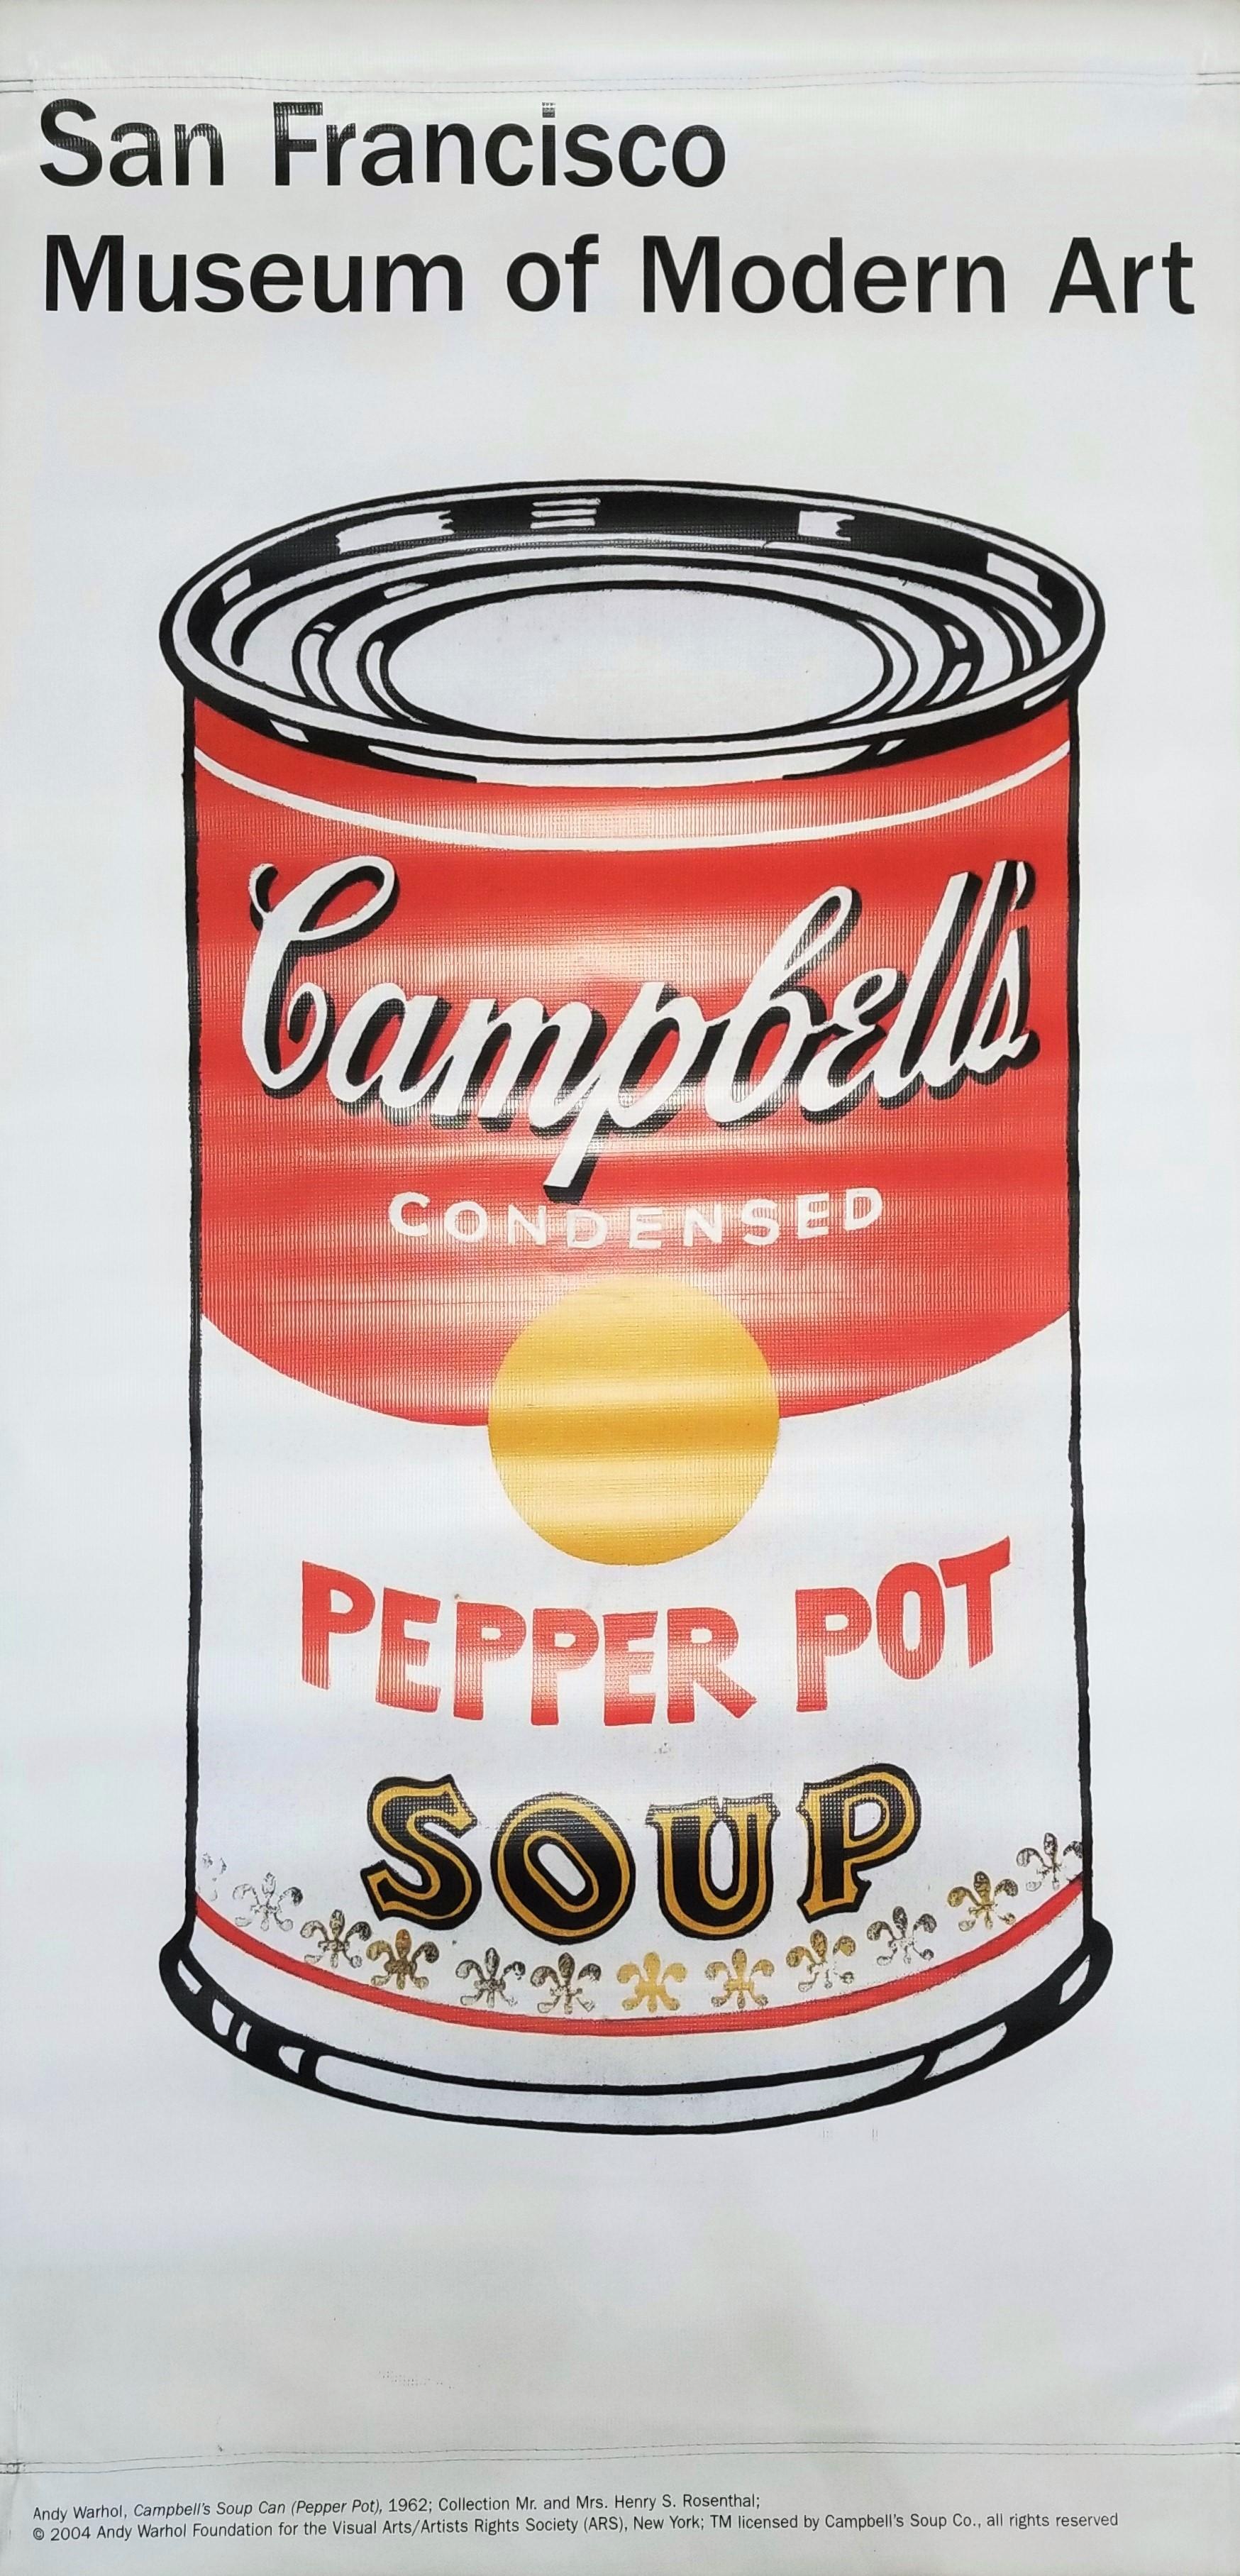 Artistics : (d'après) Andy Warhol (américain, 1928-1987)
Titre : "Musée d'art de San Francisco (Pepper Pot)"
Année : 2004
Support : Lithographie offset originale (recto-verso) sur vinyle, bannière de la rue du musée
Edition limitée :